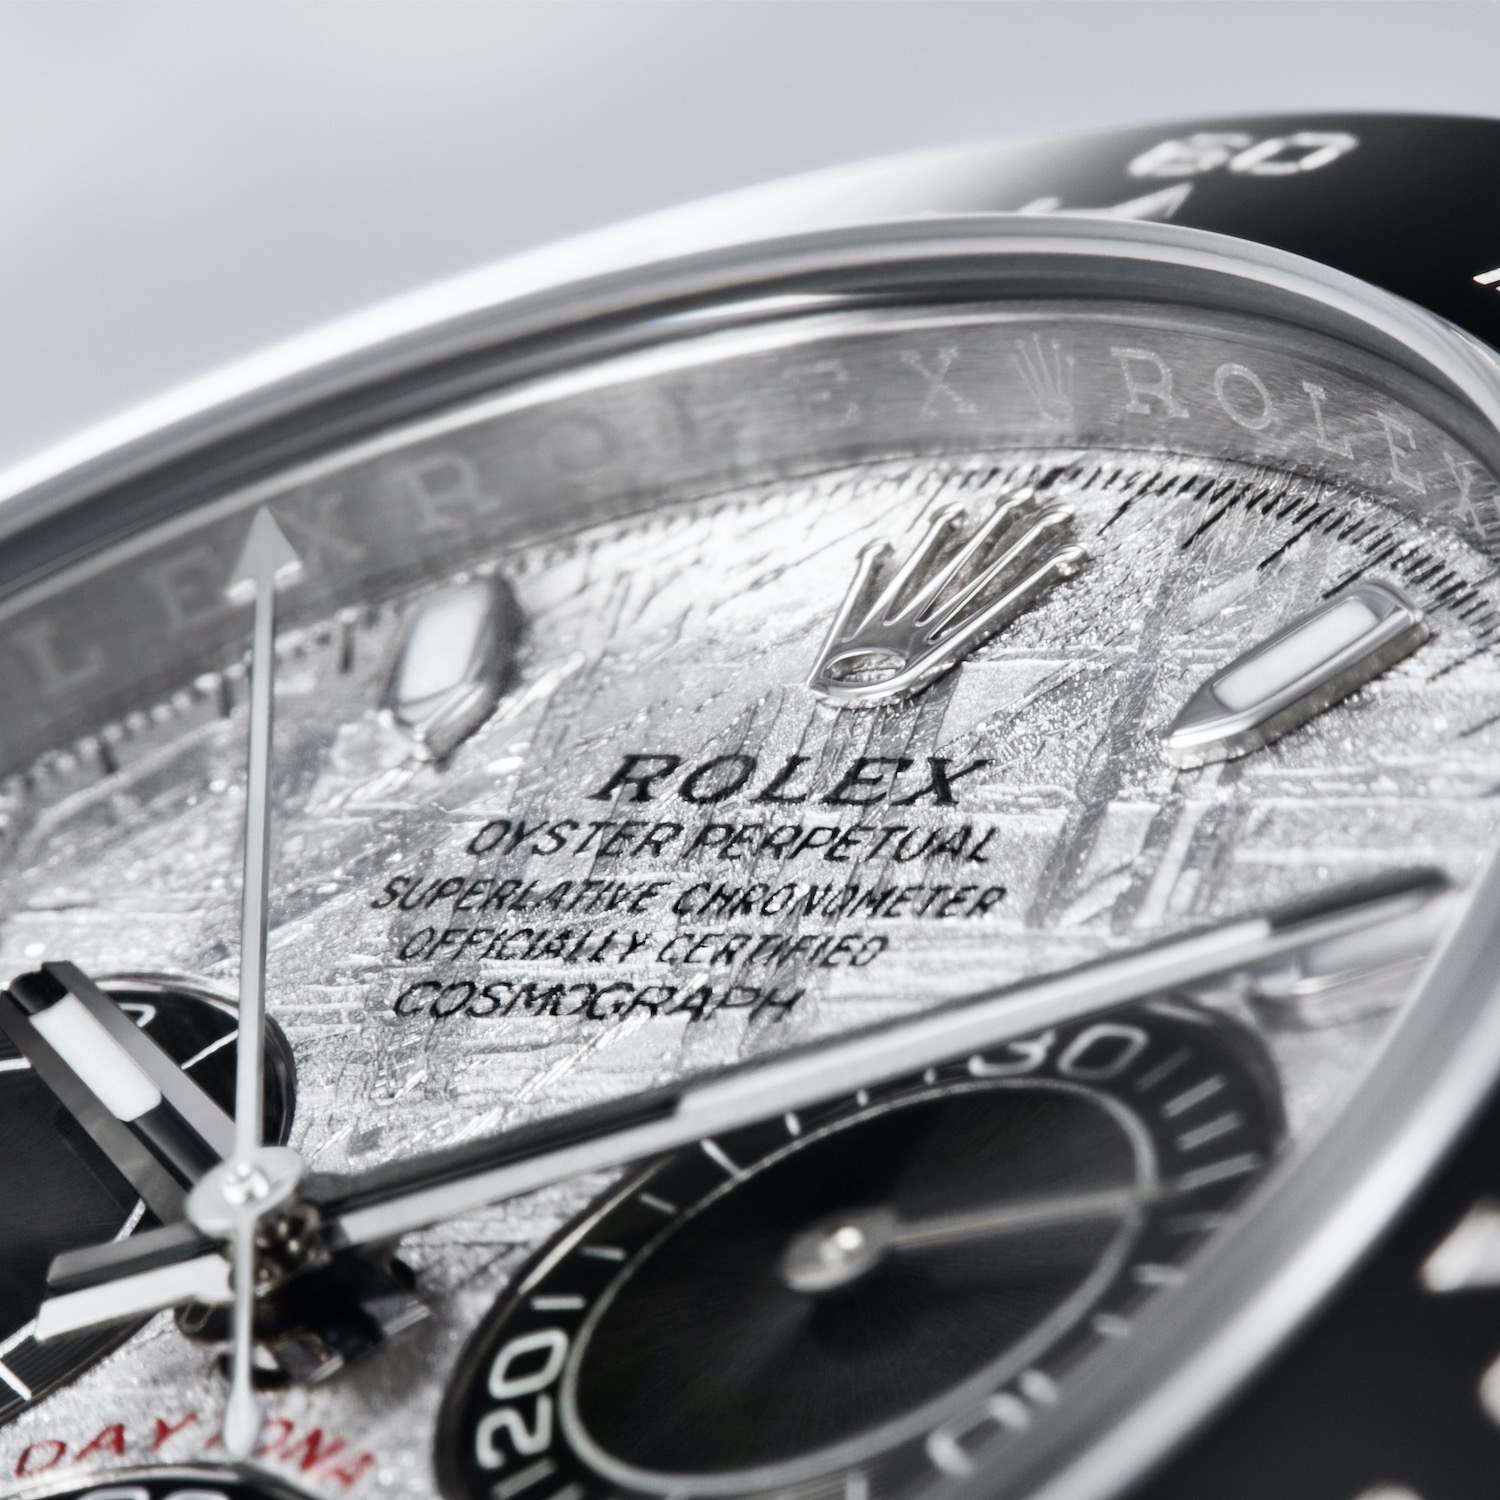 Đồng hồ Rolex Cosmograph Daytona với mặt số thiên thạch 2021